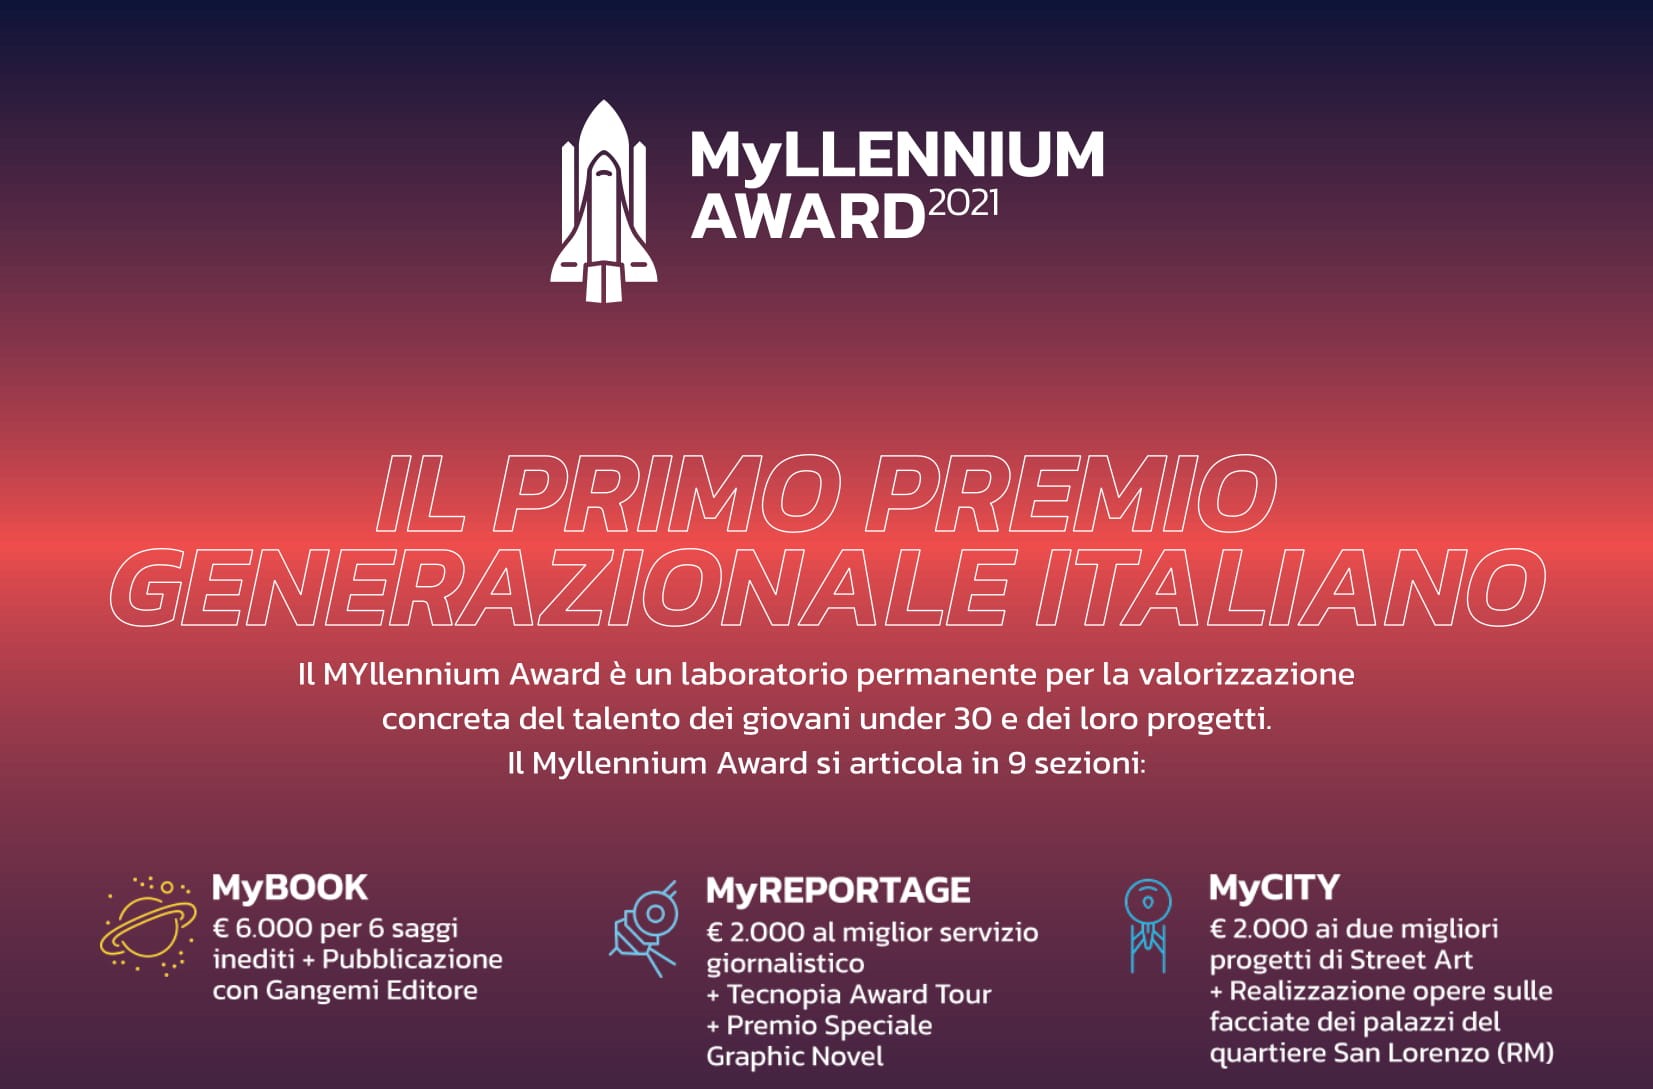 MYLLENNIUM AWARD, IL PRIMO PREMIO GENERAZIONALE ITALIANO RIVOLTO AGLI ATLETI MILLENNIALS